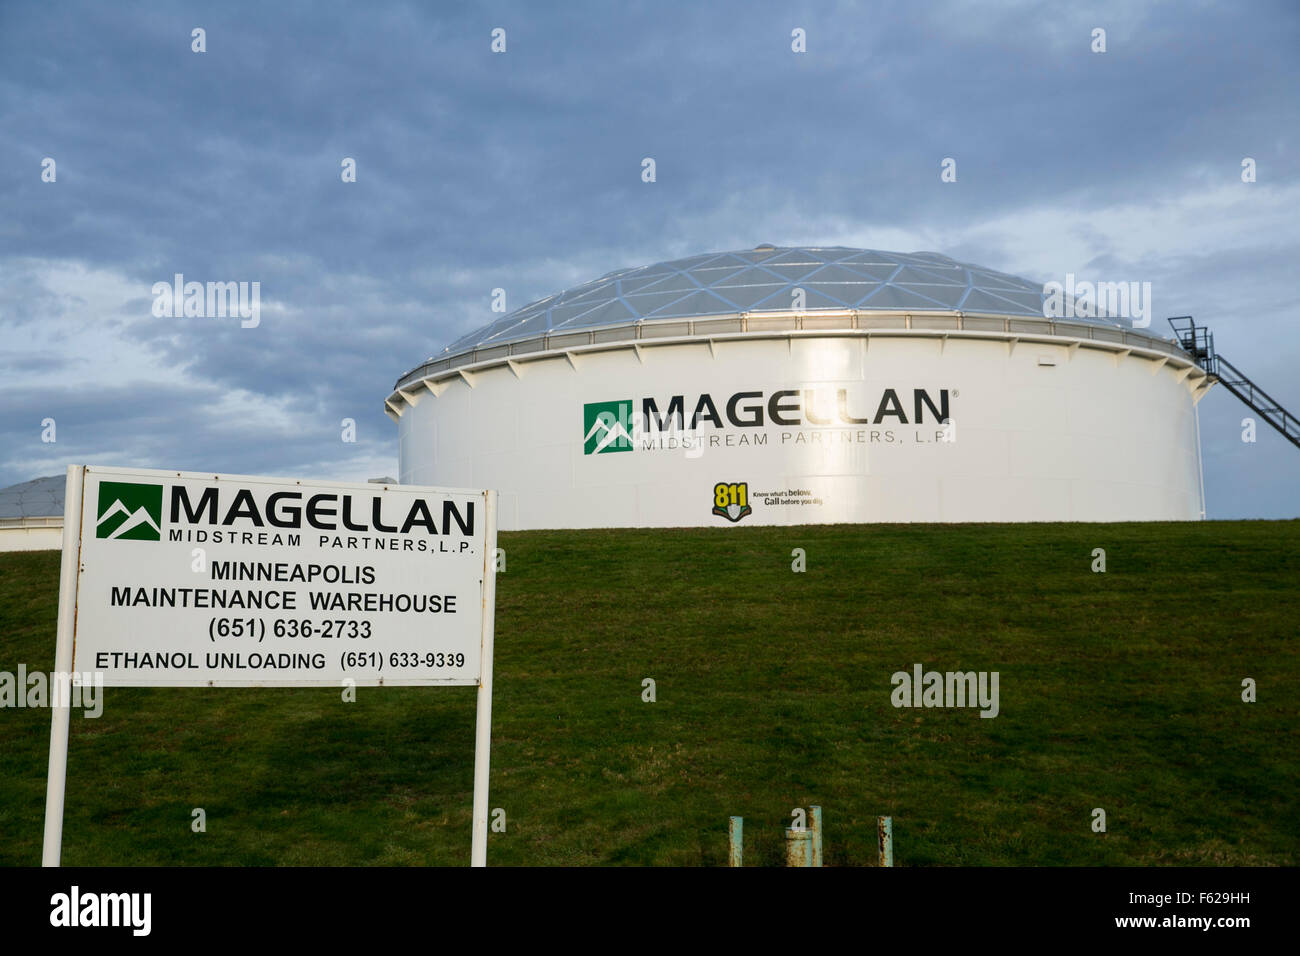 Un logo affiche à l'extérieur d'une installation de traitement, Magellan occupés Partners, L.P., à Saint Paul, Minnesota le 25 octobre 2015. Banque D'Images